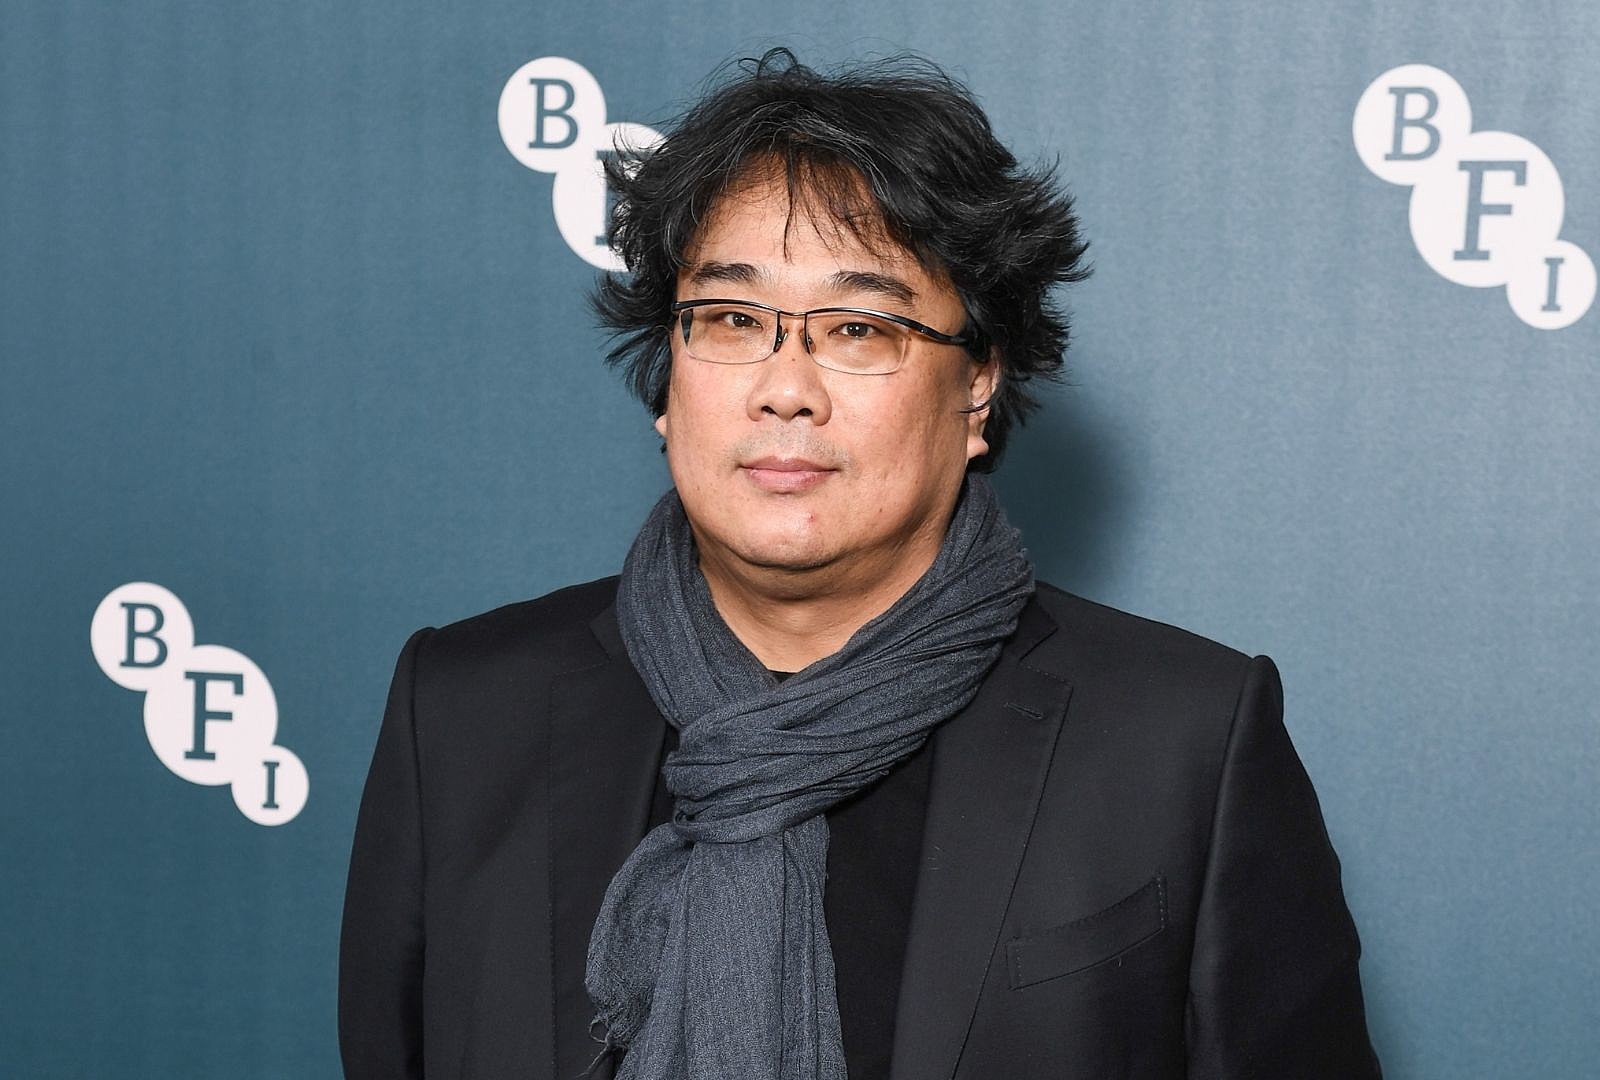 Đạo diễn Bong Joon Ho chưa ra mắt phim điện ảnh nào từ sau thành công của Ký sinh trùng